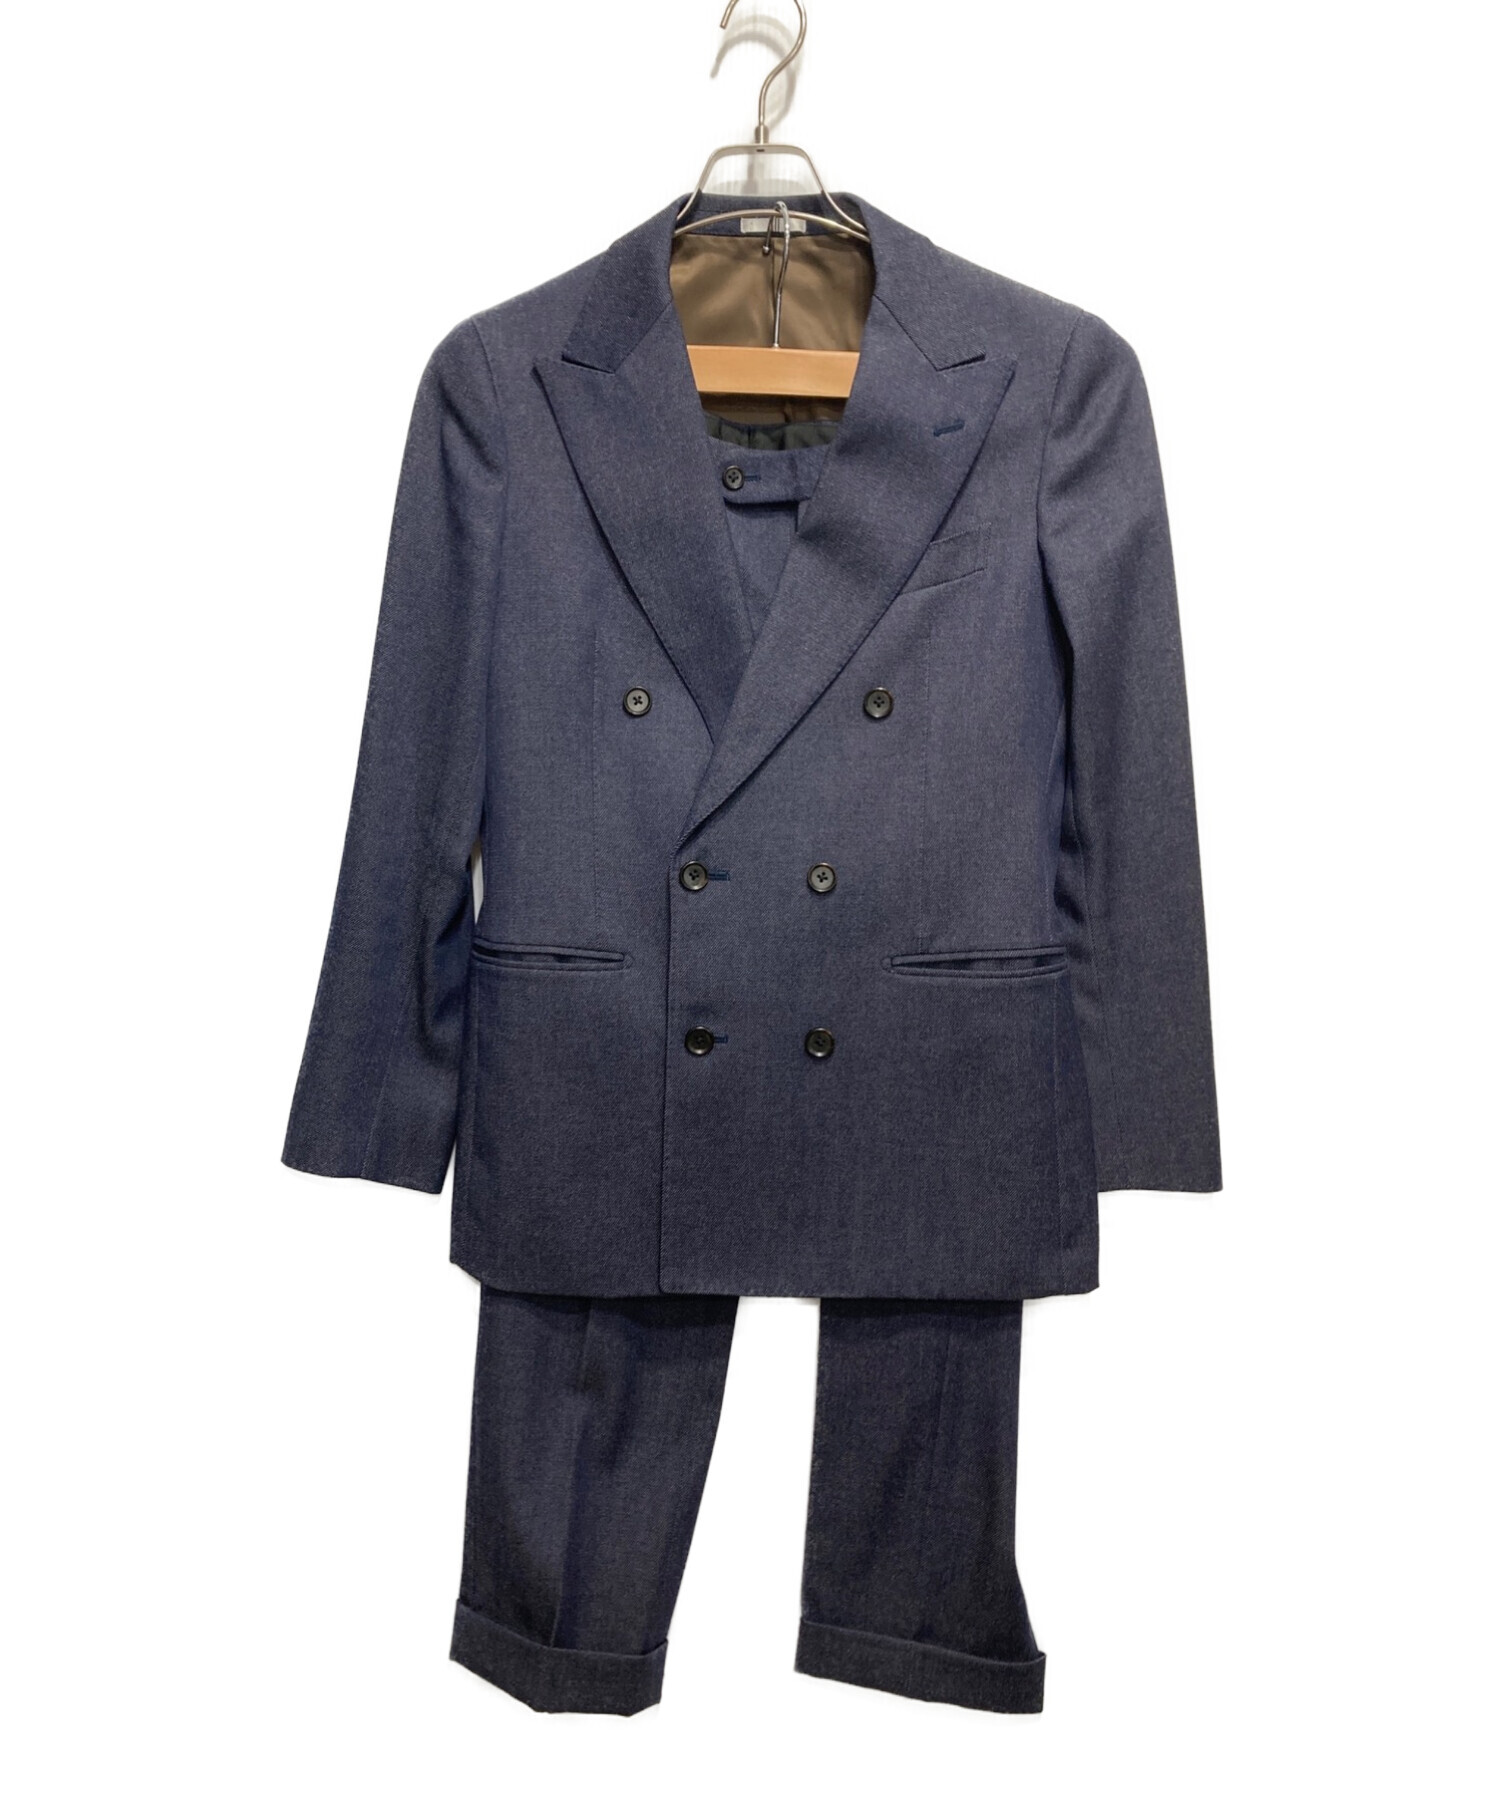 SUIT SELECT スーツセレクト メンズスーツ セットアップ Y4 - スーツ